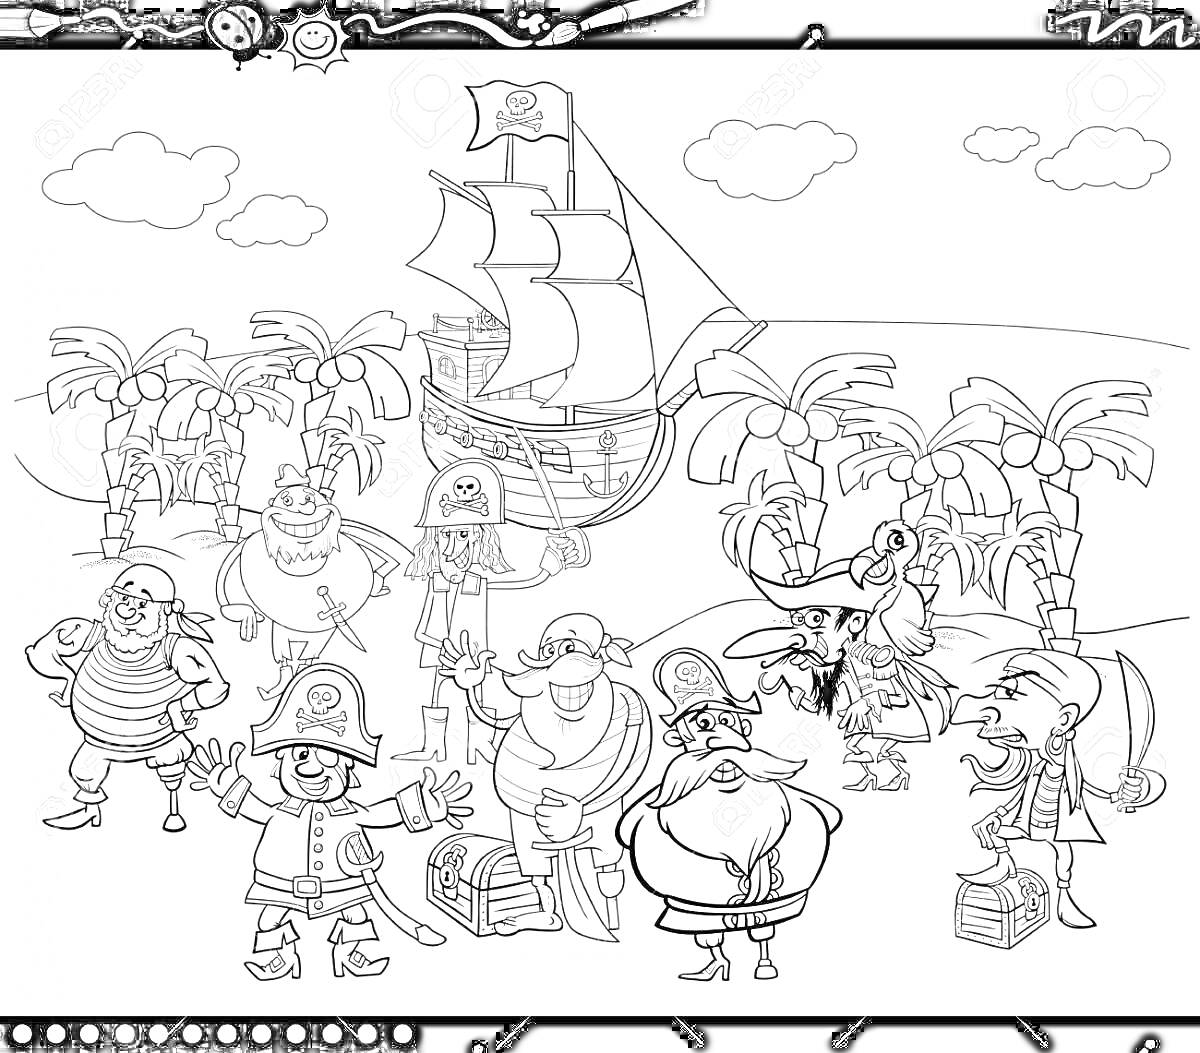 Раскраска Пираты на острове сокровищ, корабль с парусами, пальмы, treasure chest, карта, пальмы, облака